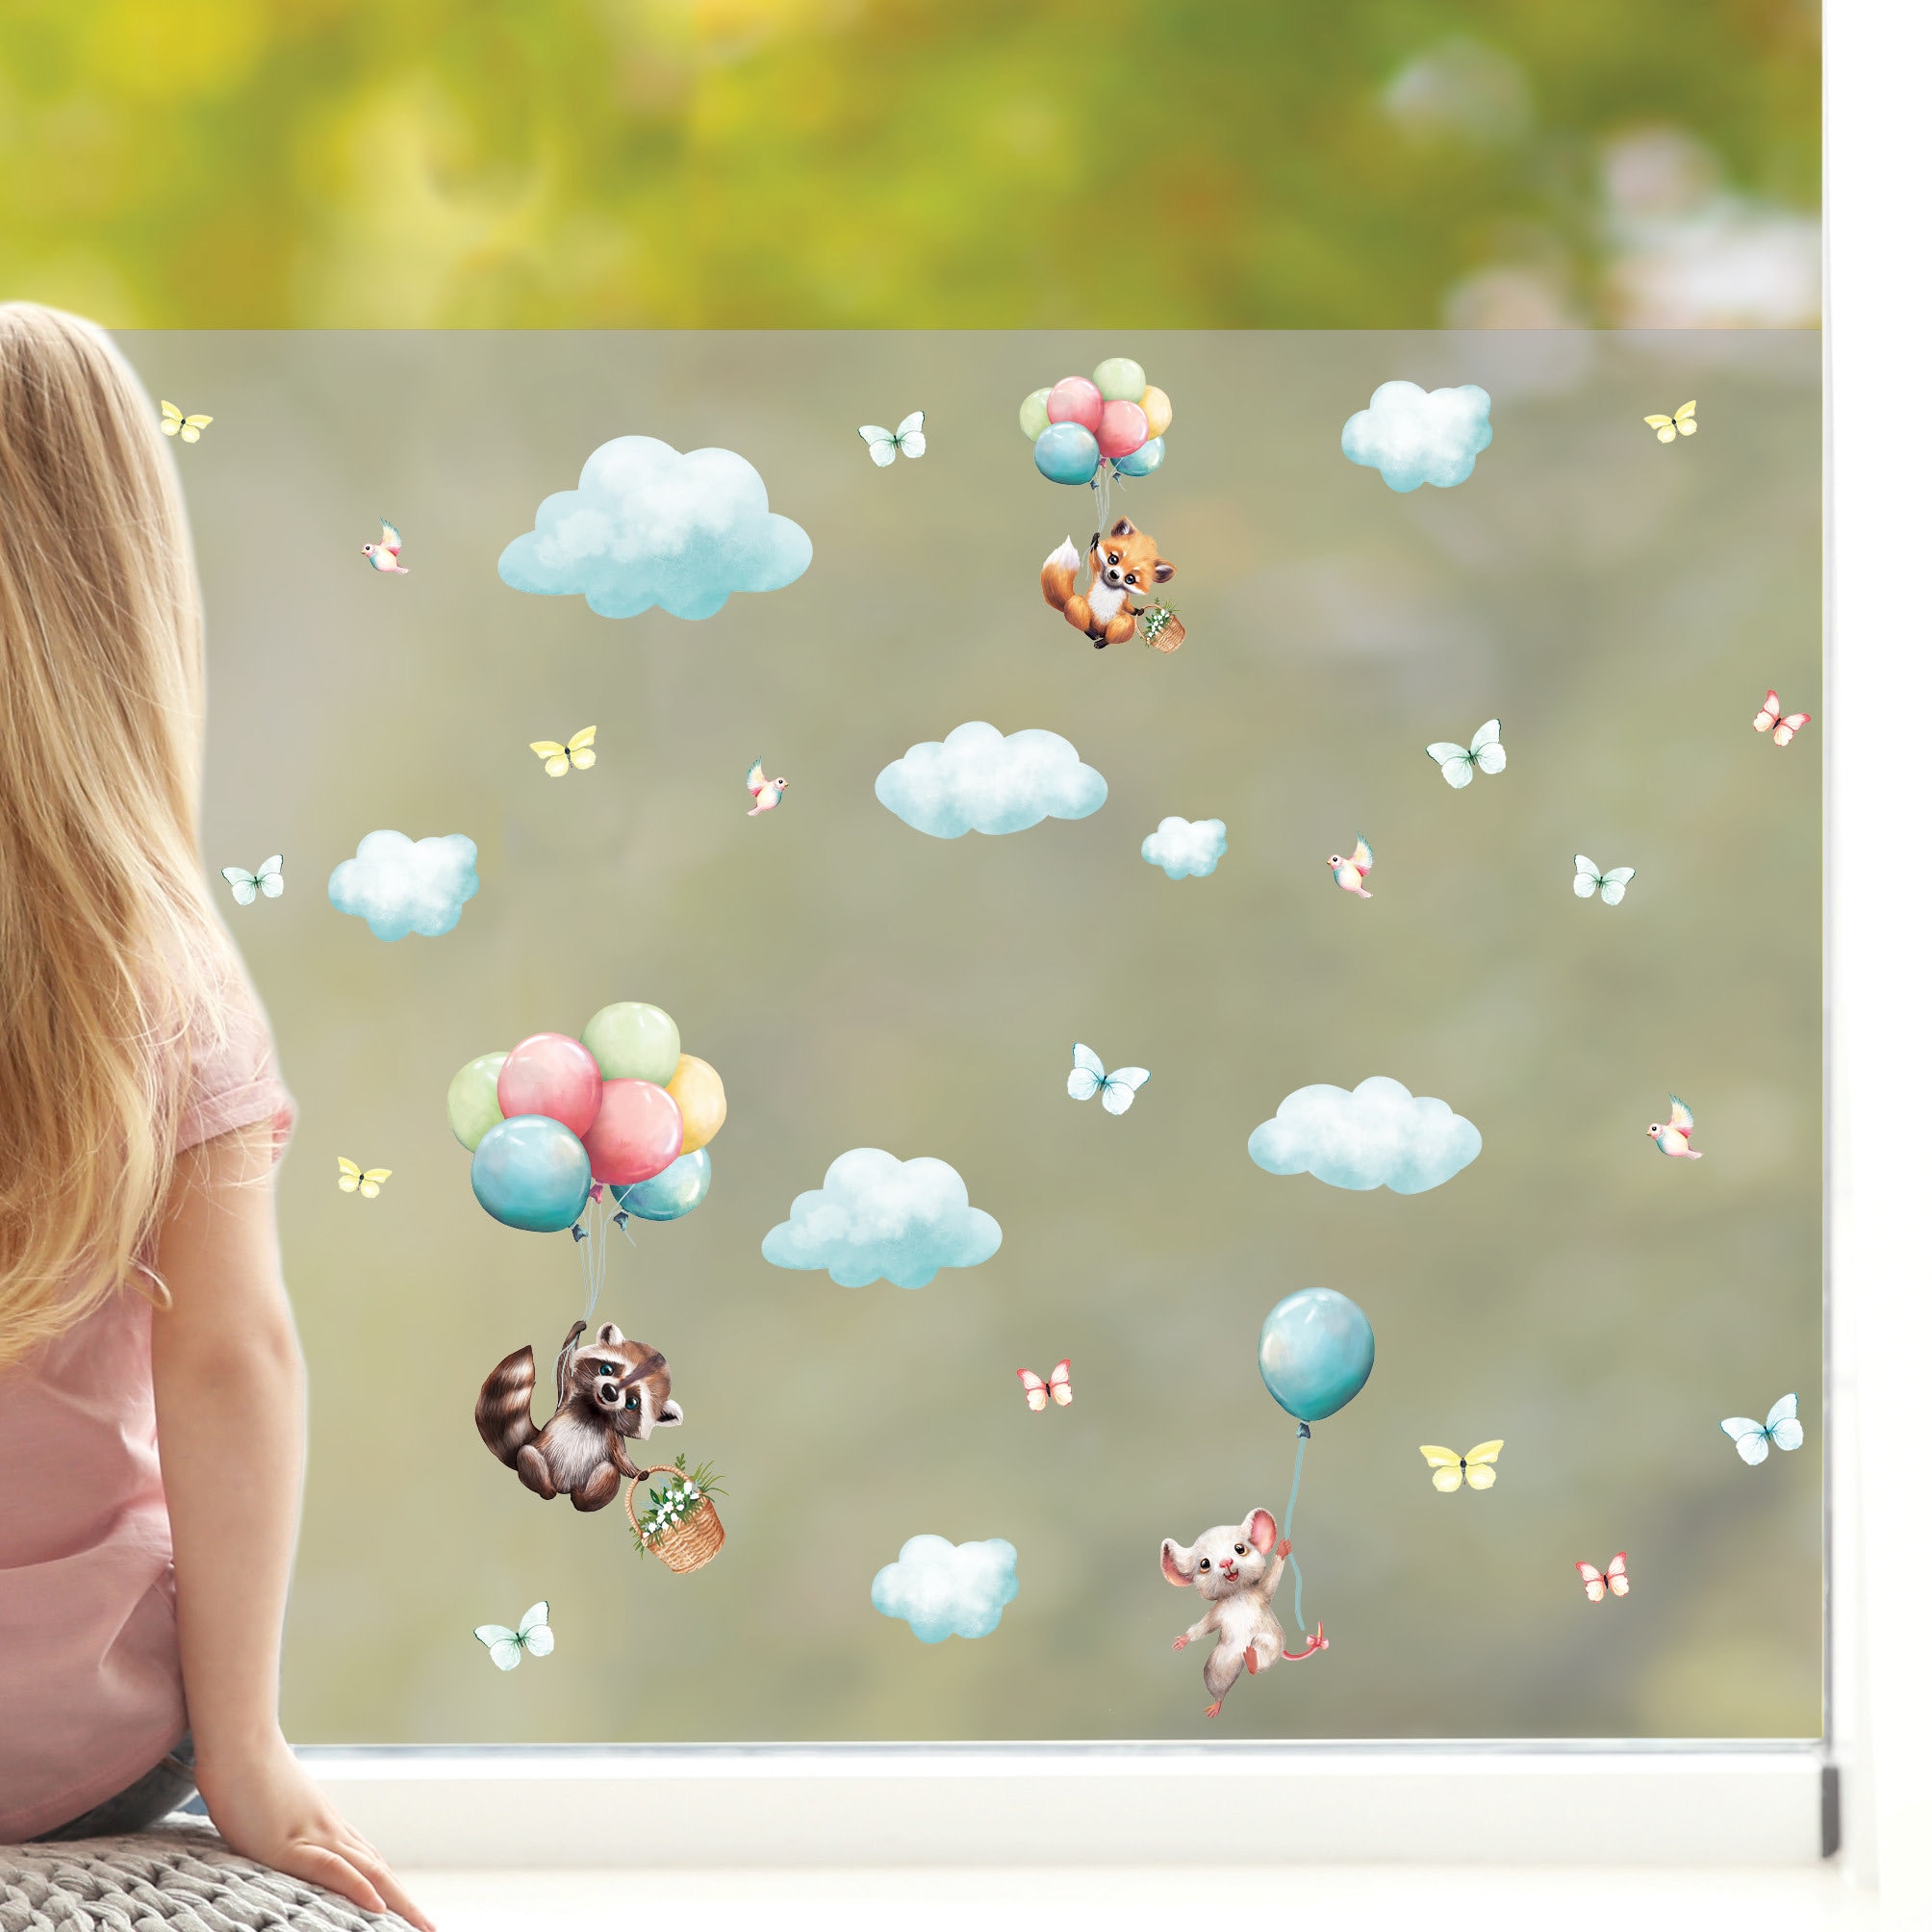 Sichtschutzfolie Kinderzimmer Waschbär und Maus mit Luftballons, Fensterfolie Fensterdeko Milchglasfolie